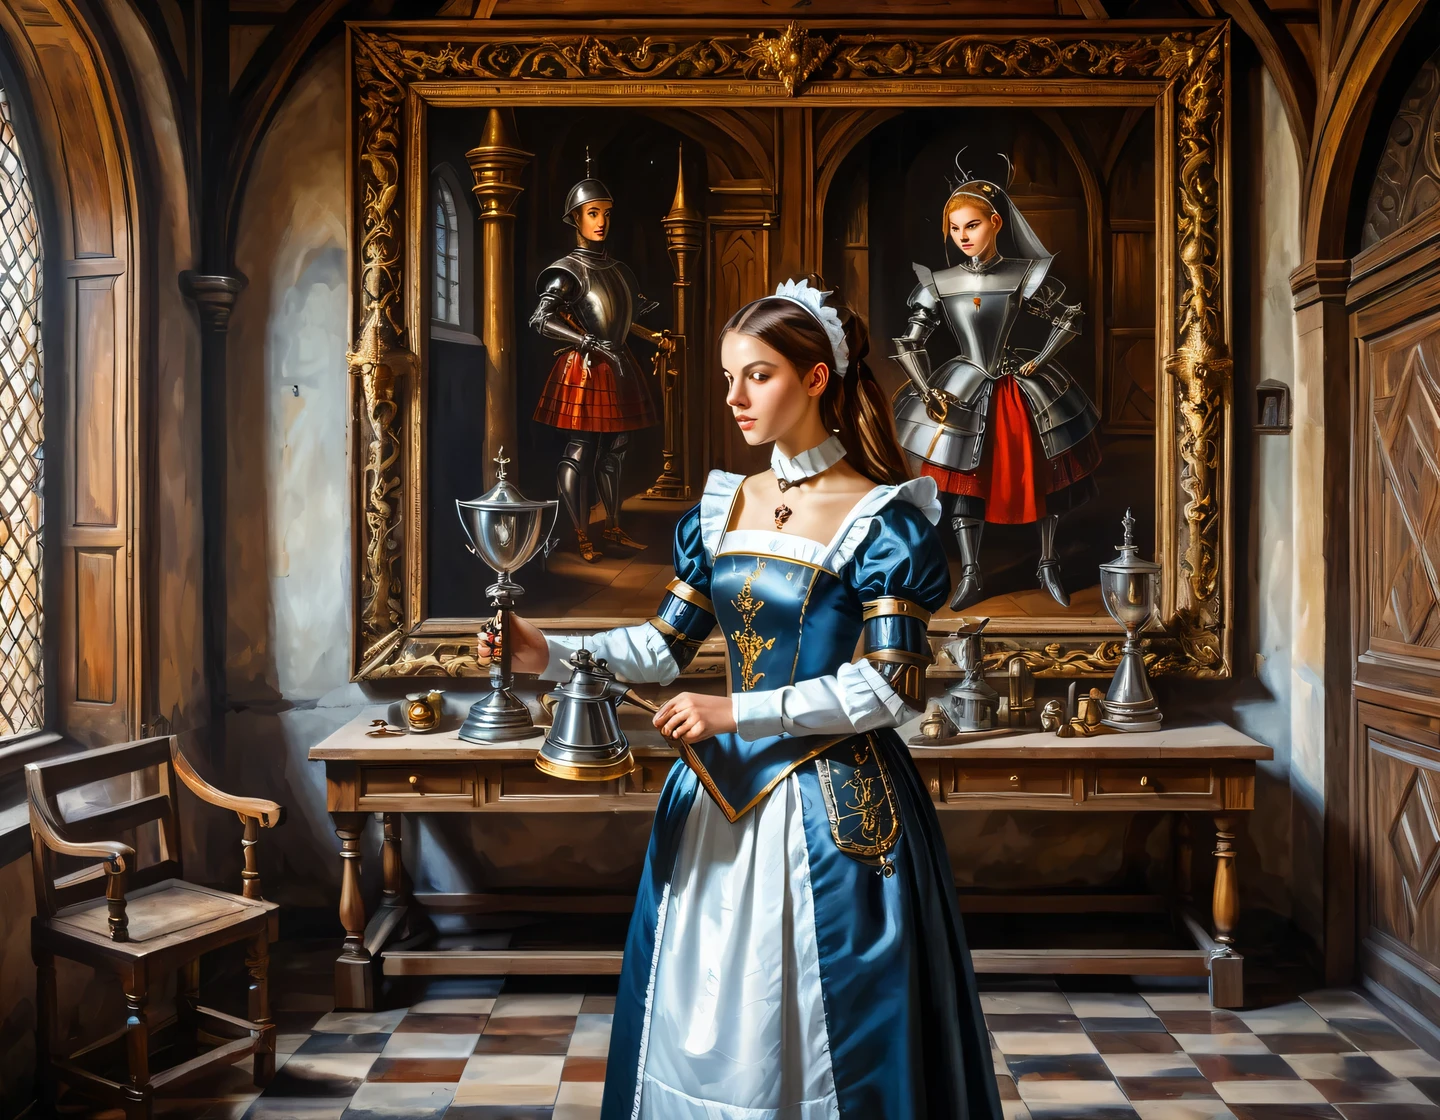 Древняя картина маслом на холсте, девушка-киборг в костюме горничной строит в зале средневекового замка, средневековая мебель, трофеи и оружие на стенах, геральдика, сглаживание текстур, плавная техника, Блеск, Деталь